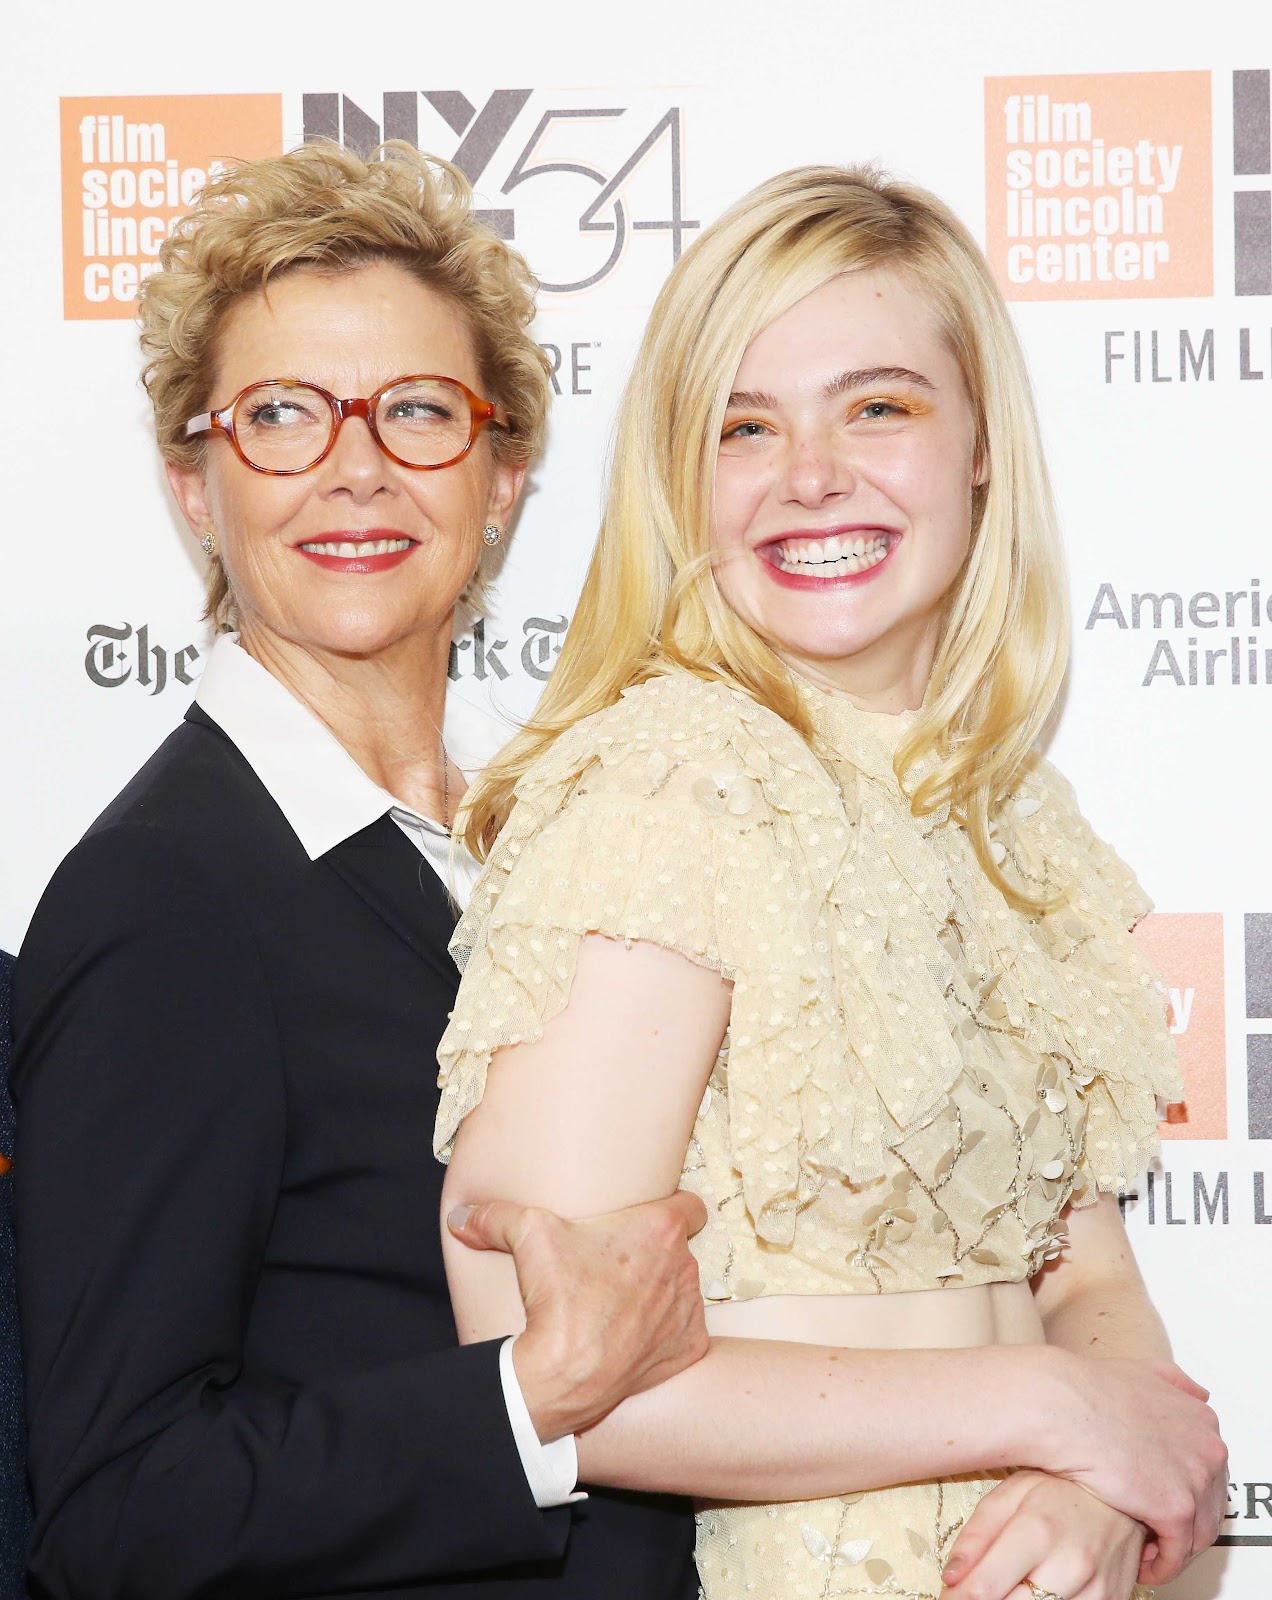 Photo マイク ミルズ監督の最高傑作 世紀の女たち が ニューヨーク映画祭のプレミア上映で大絶賛の喝采を博しちゃったエルたんとアネット ベニング B Side Of Cia